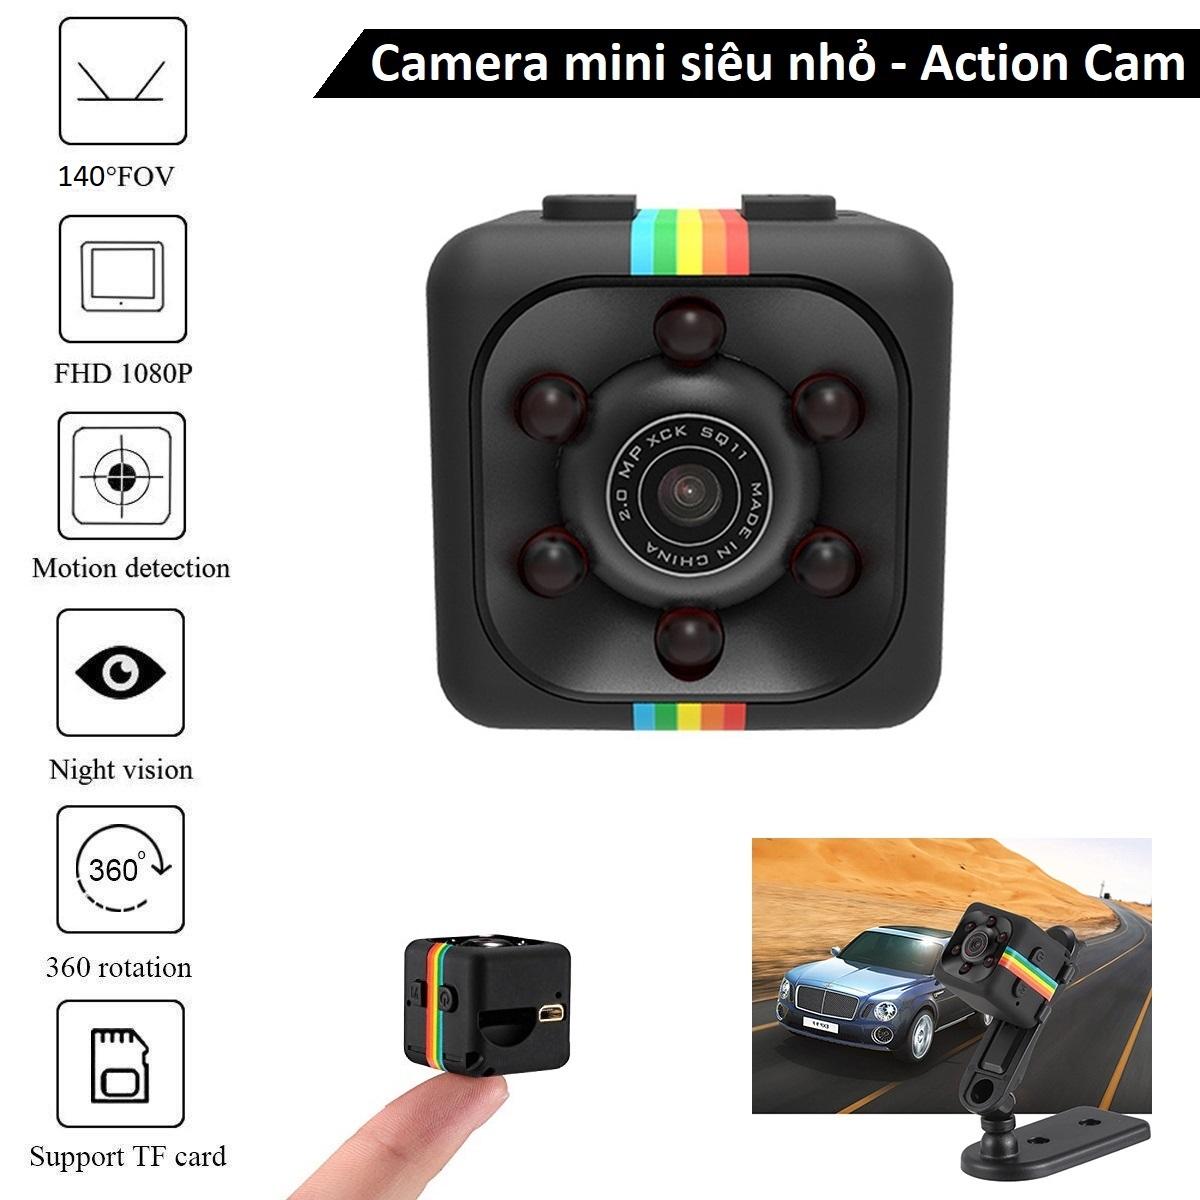 Camera hành trình siêu nhỏ SQ11 có hồng ngoại - Camera mini